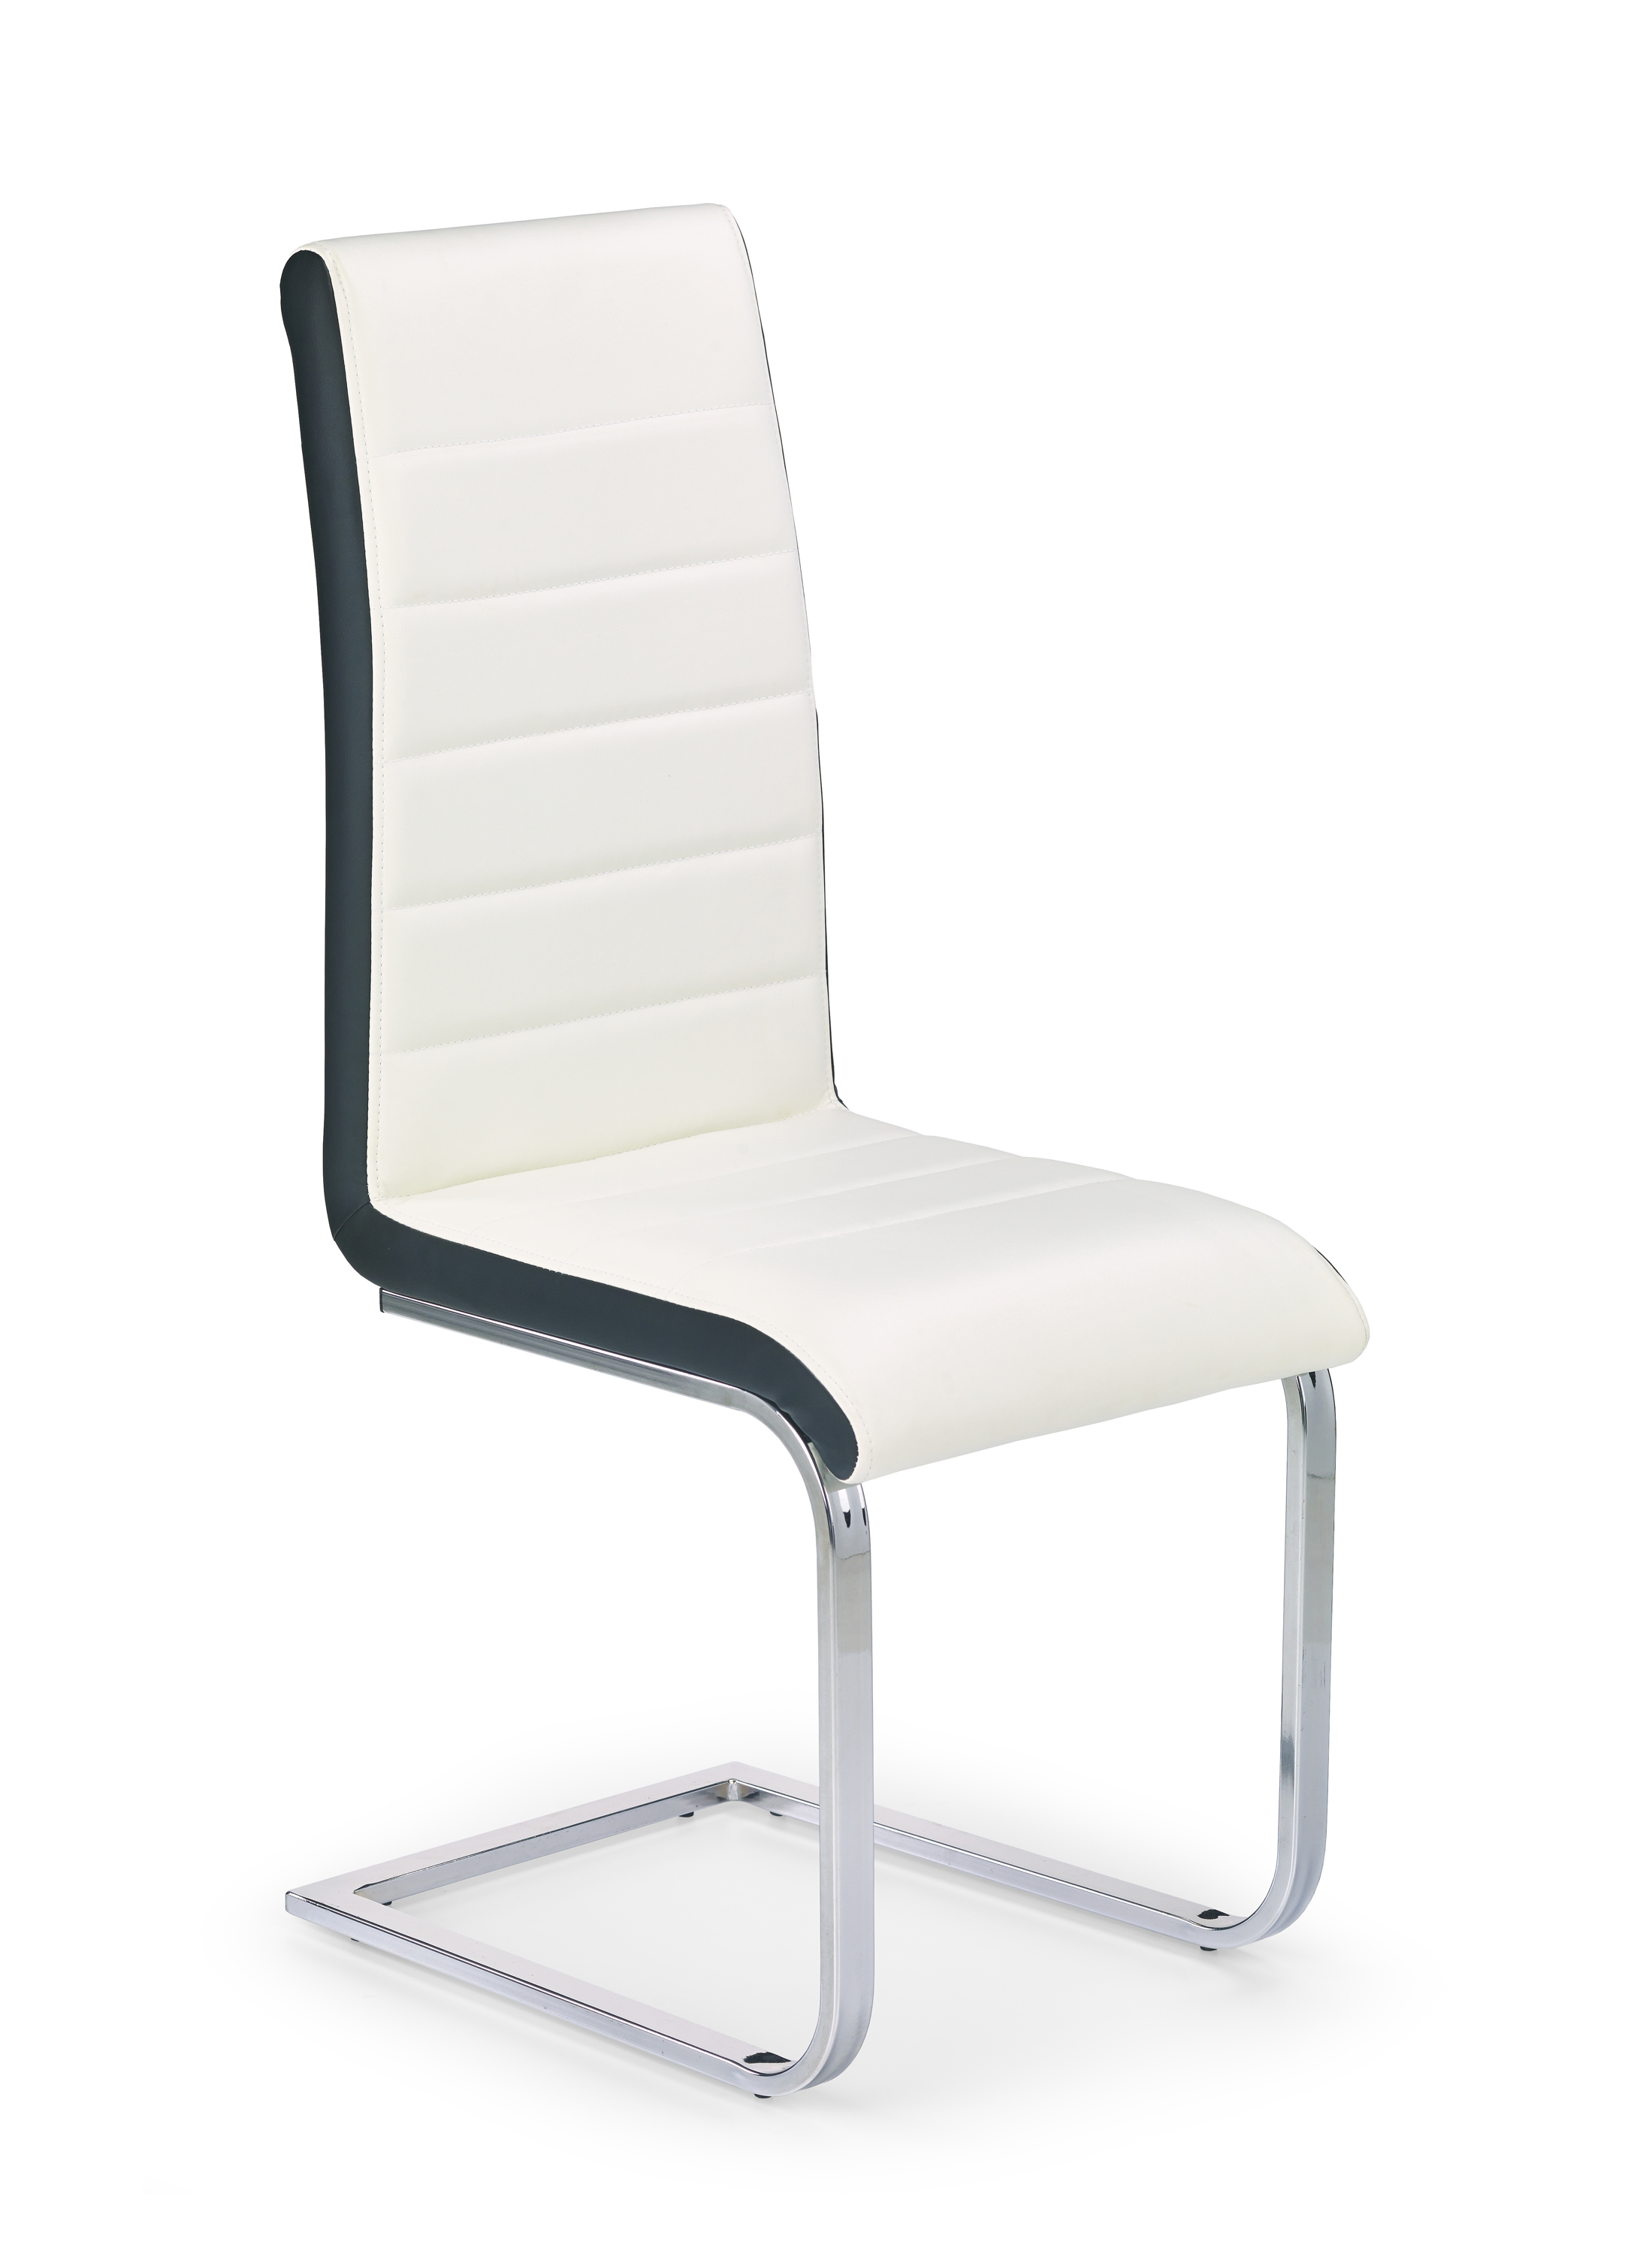 K132 szék - fehér / fekete Židle k132 - bílý / Fekete